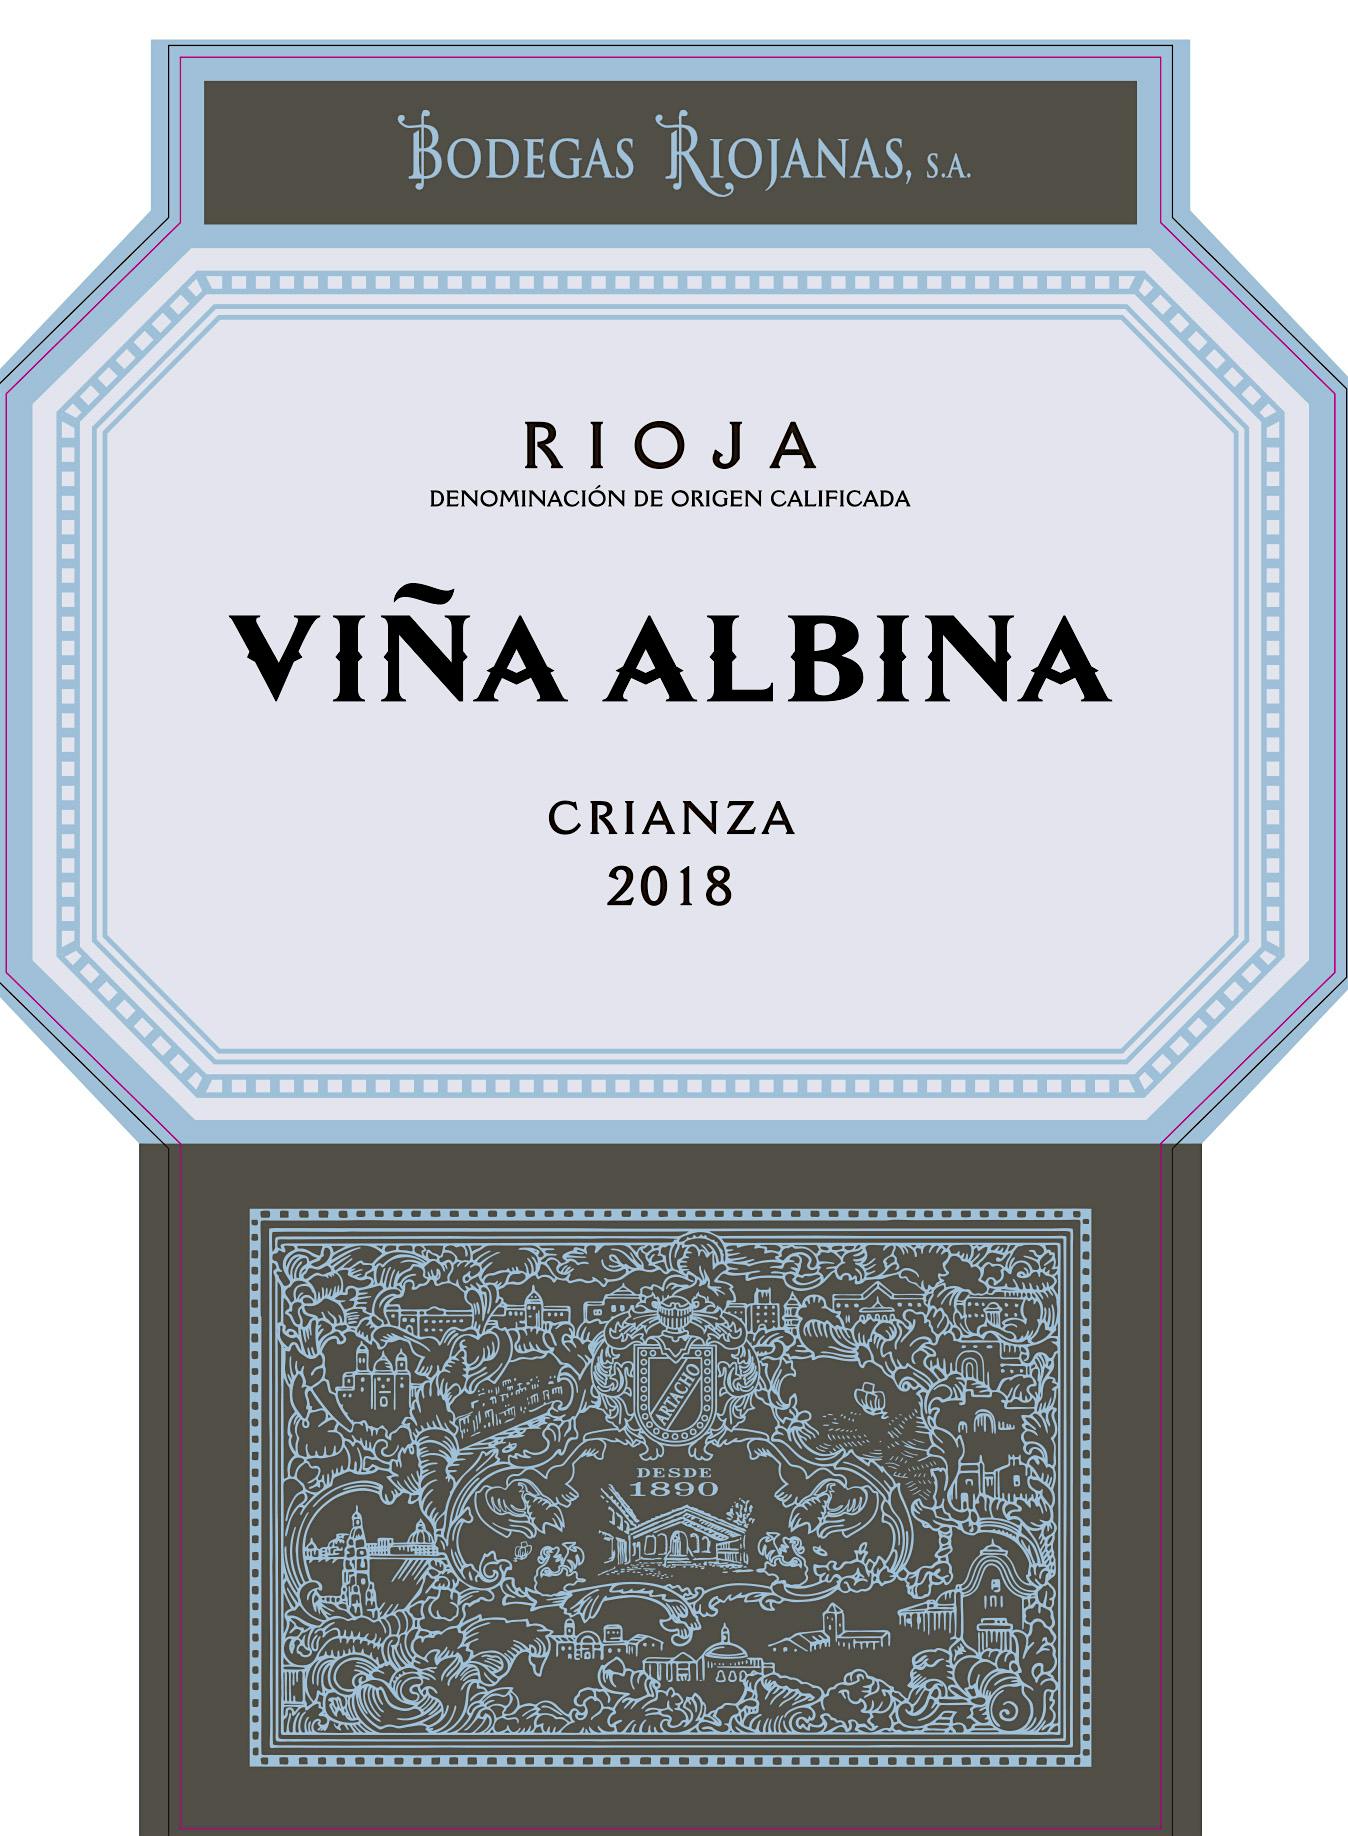 Label for Bodegas Riojanas